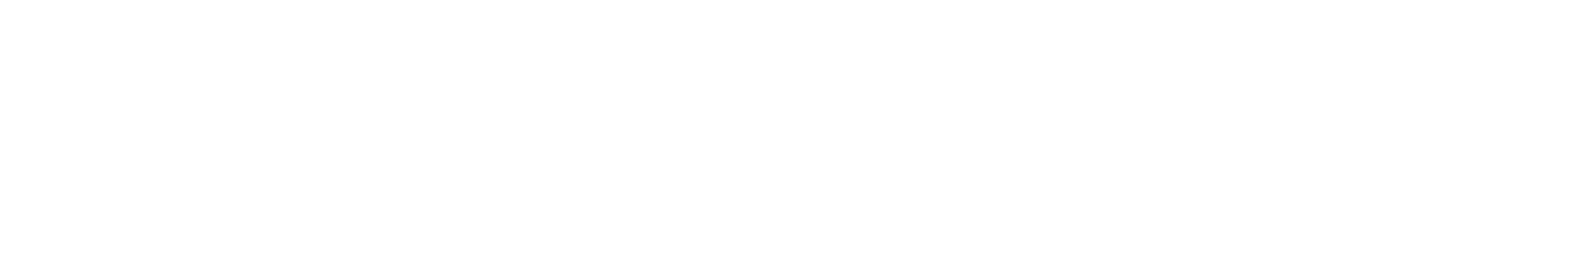 Atlantic Union Bankshares logo large for dark backgrounds (transparent PNG)